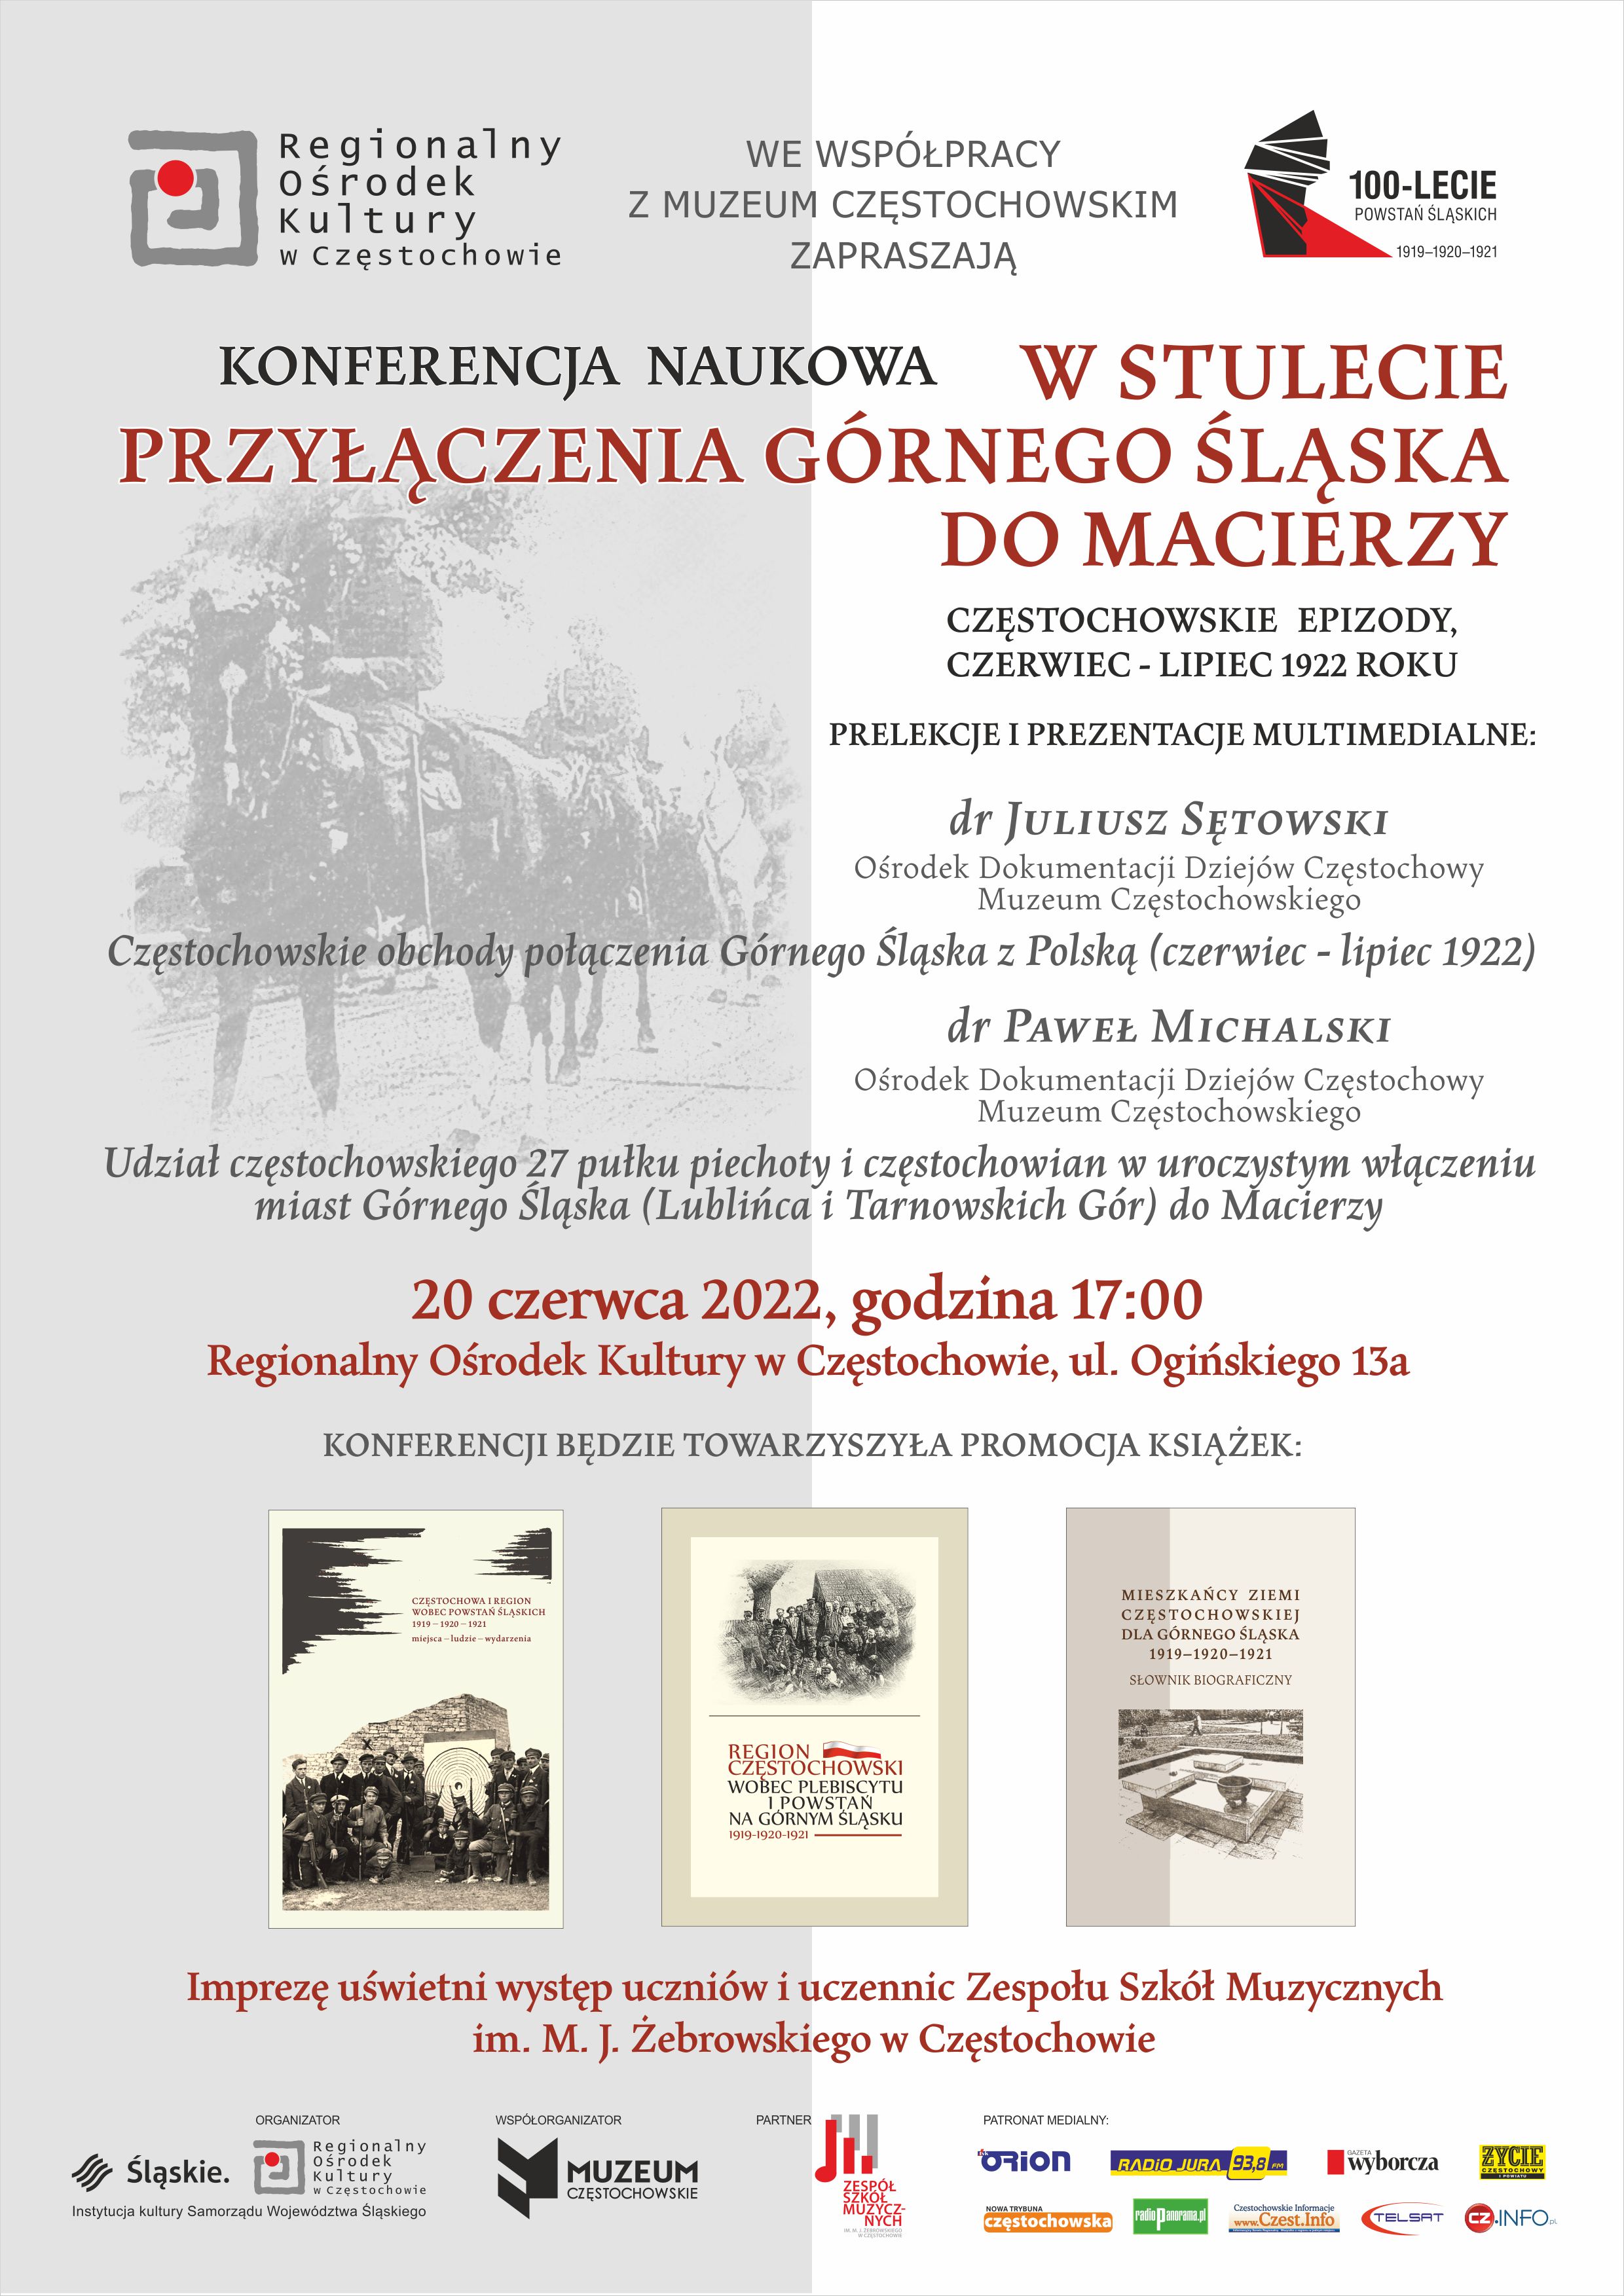 Plakat promujący konferencję naukową w stulecie przyłączenia Górnego Śląska do macierzy. Tekst alternatywny poniżej.